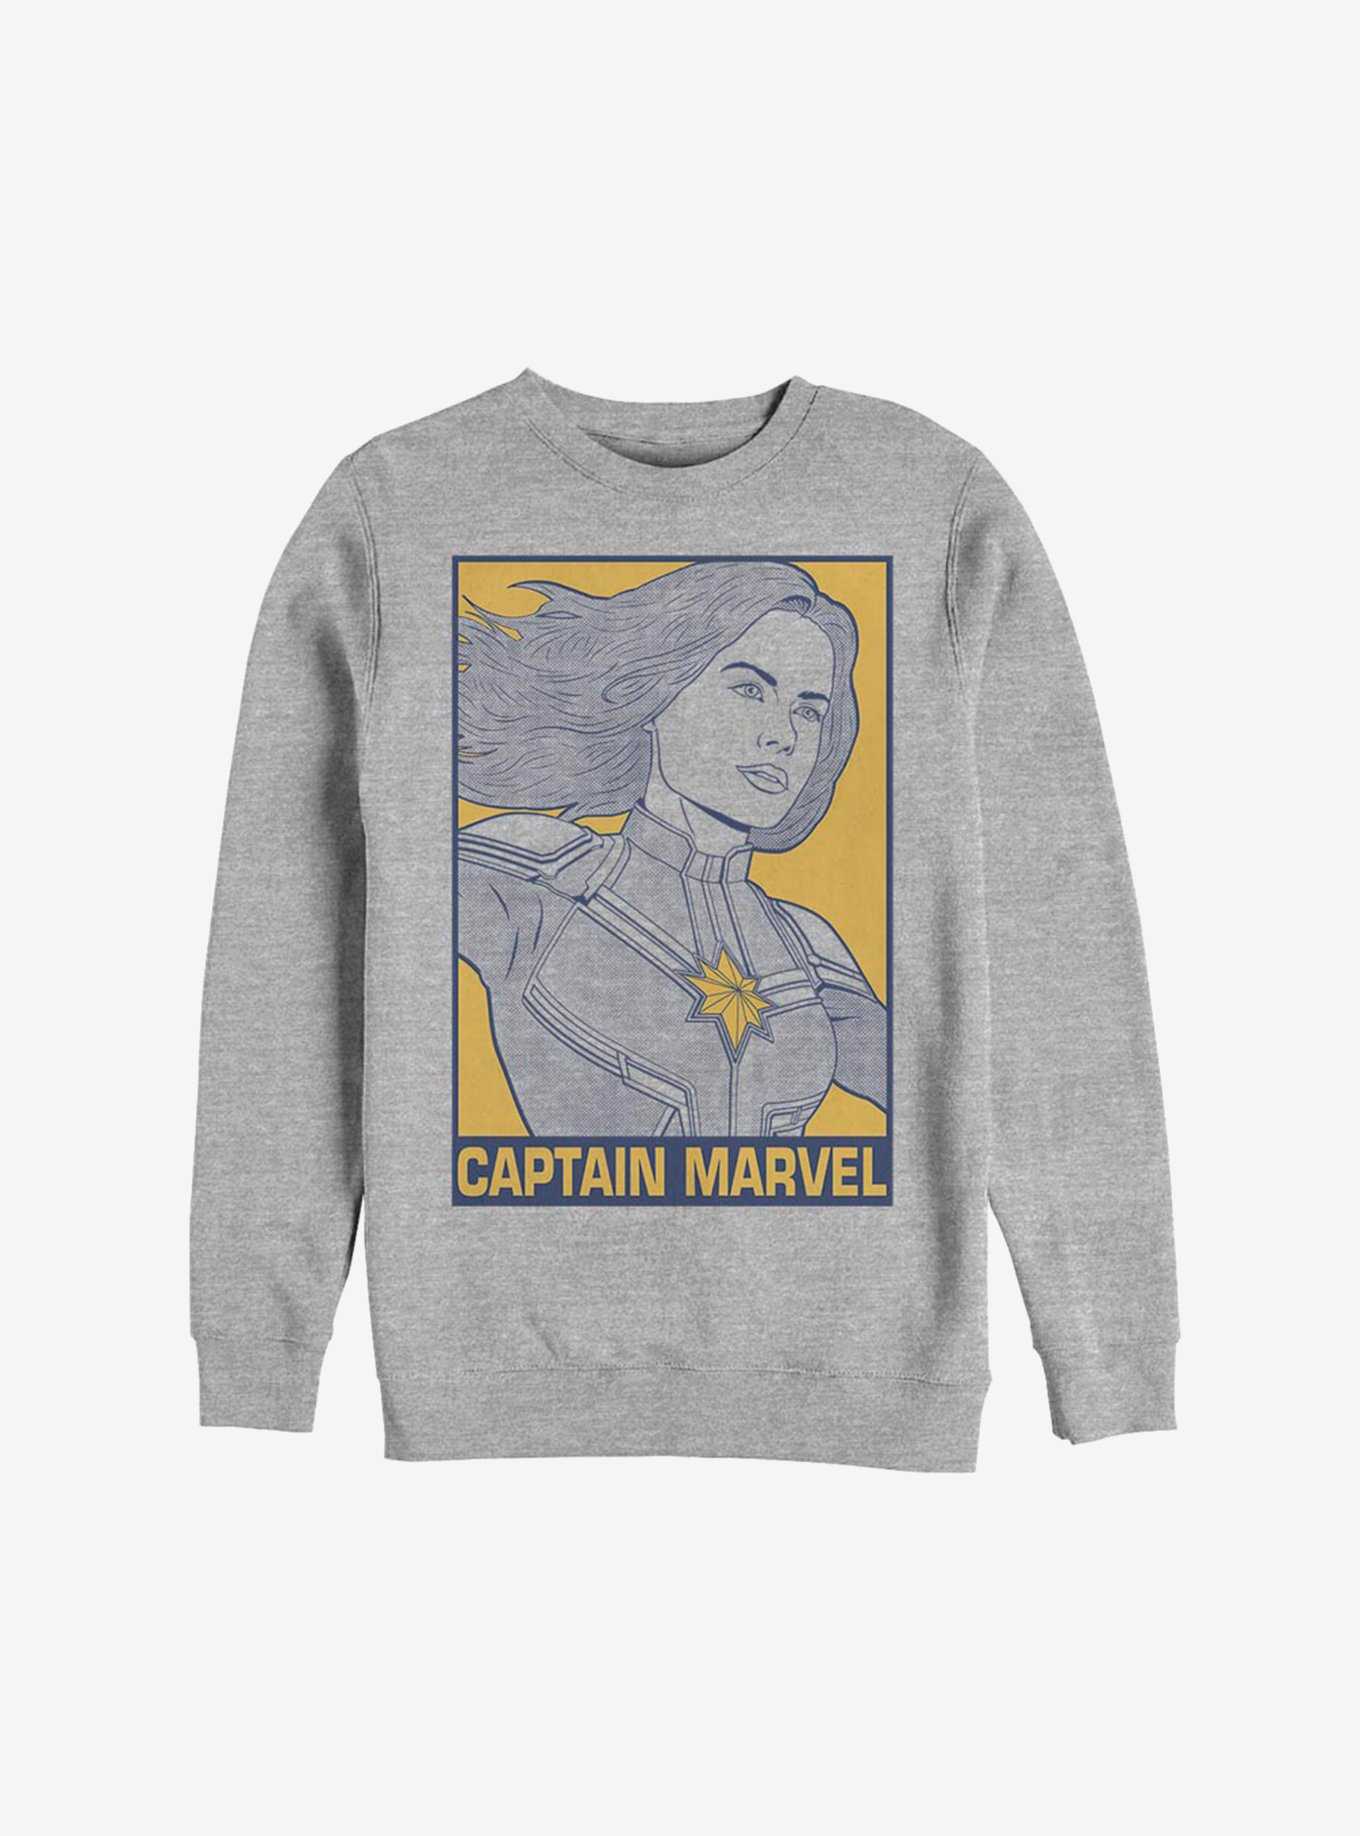 Marvel Avengers: Endgame Pop Captain Marvel Sweatshirt, , hi-res